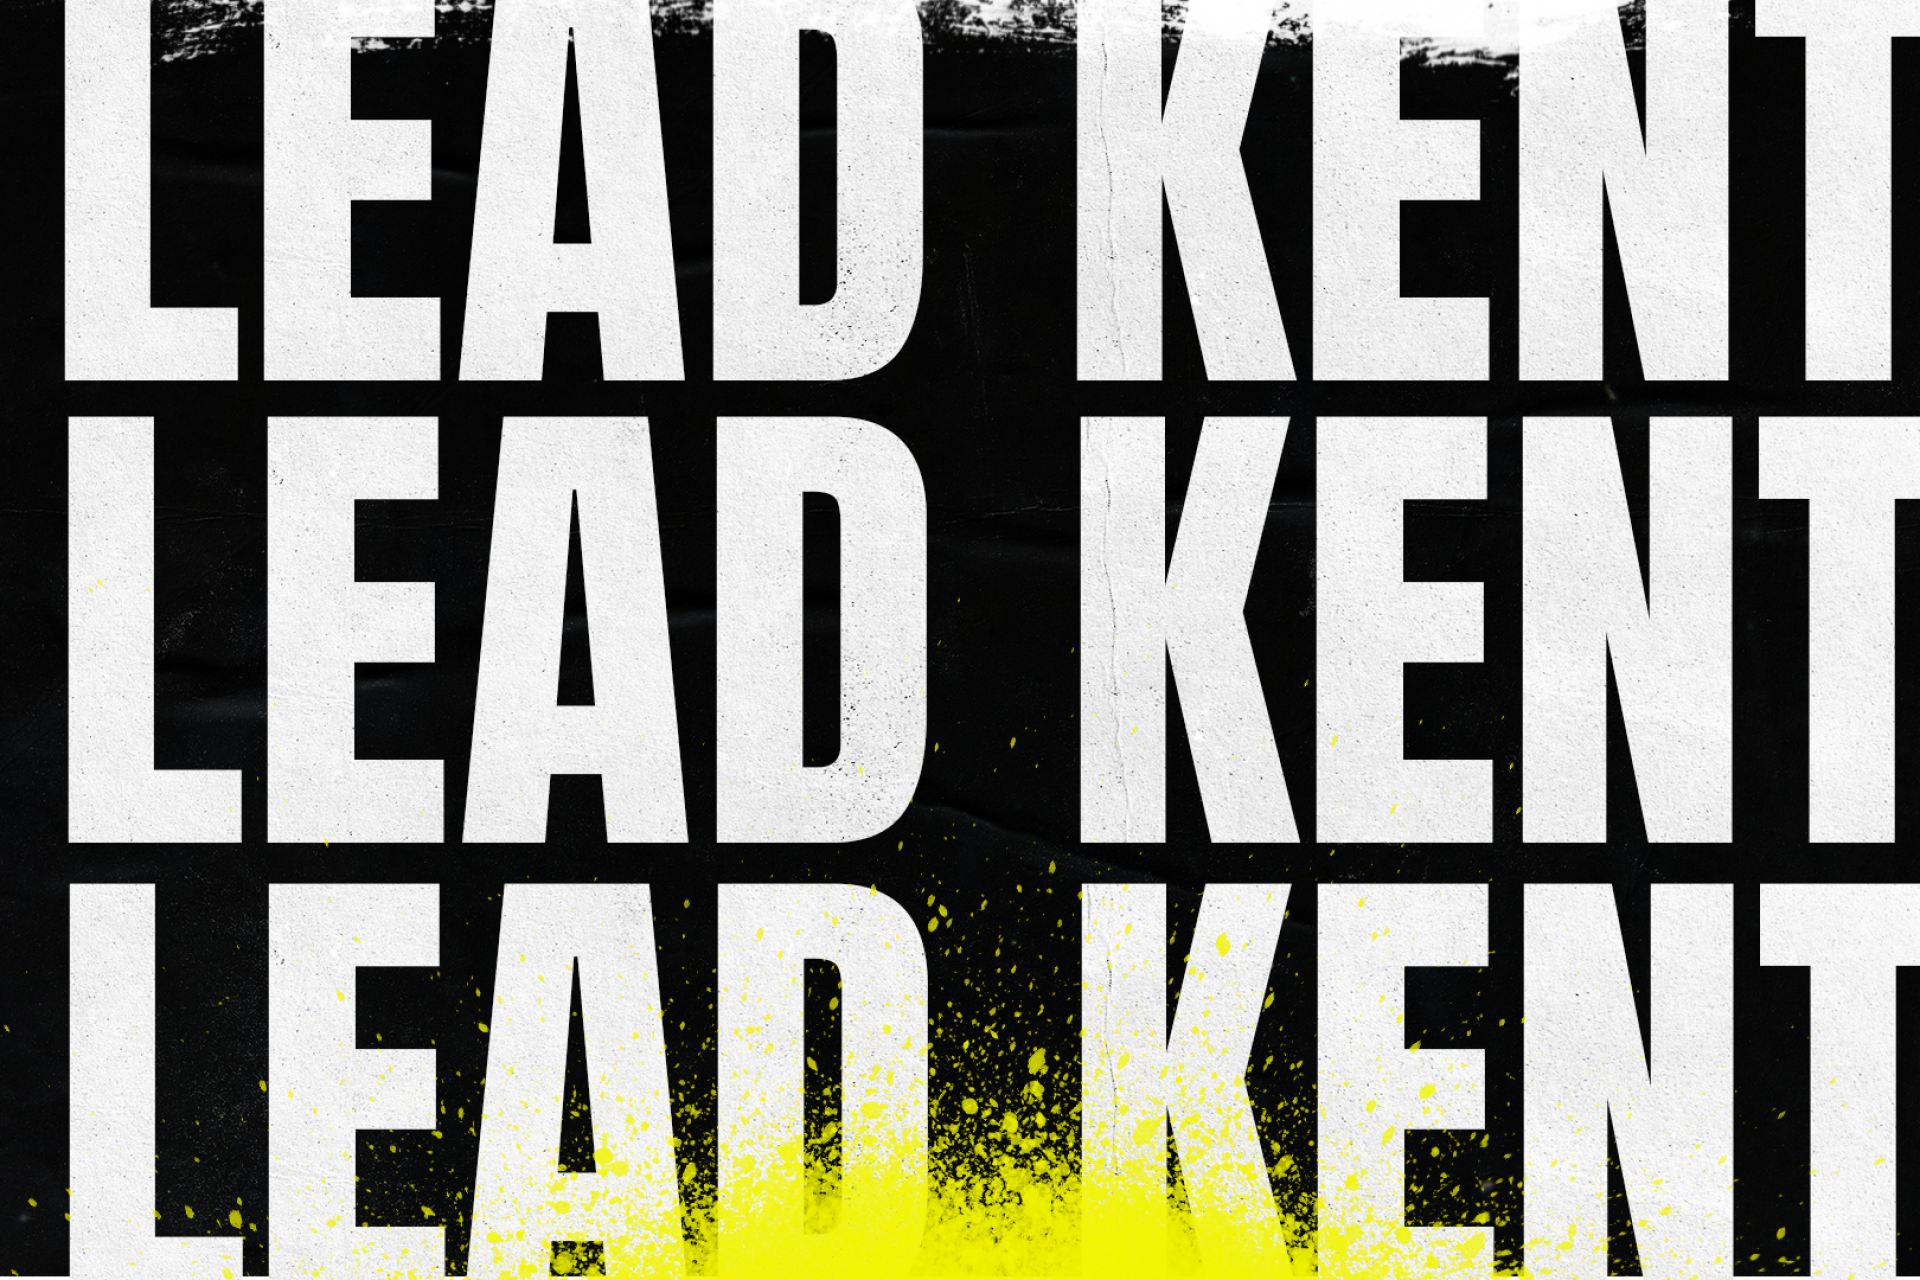 Lead Kent